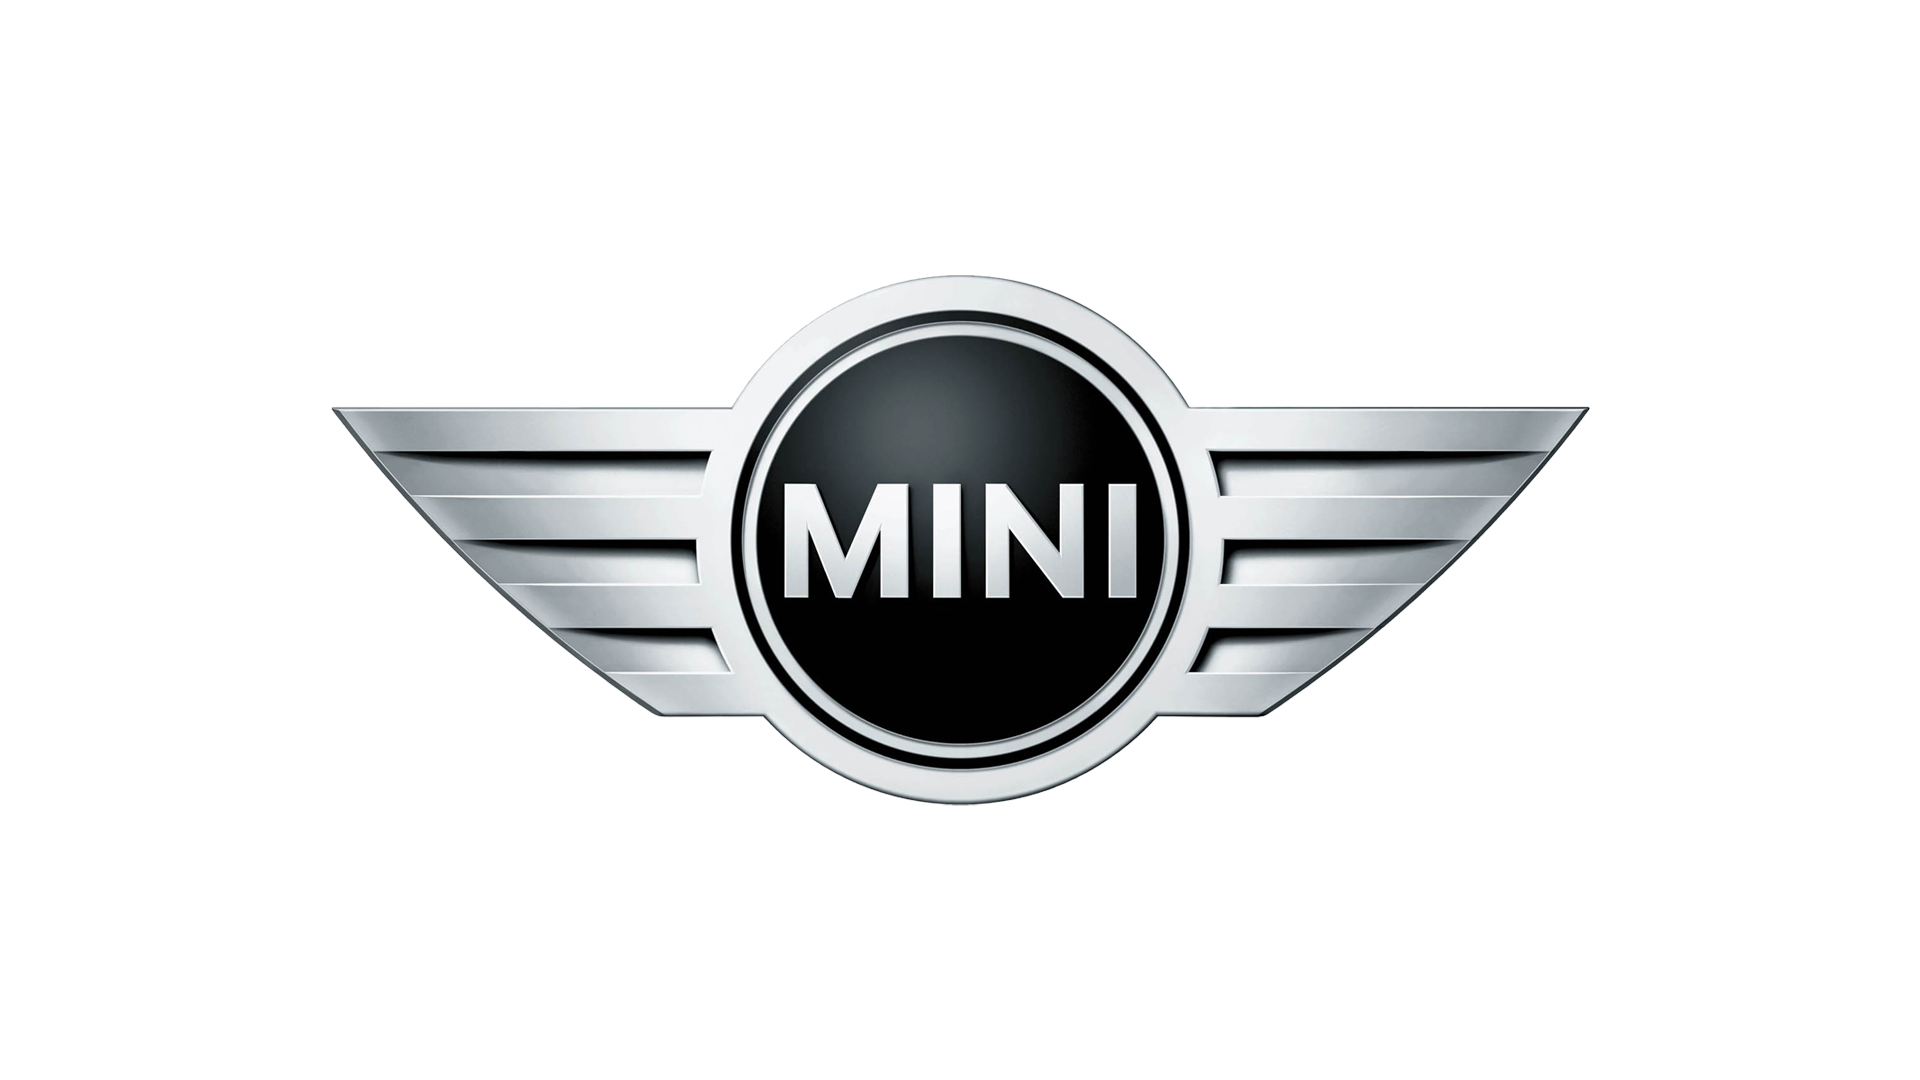 Mini-logo-2001-1920x1080